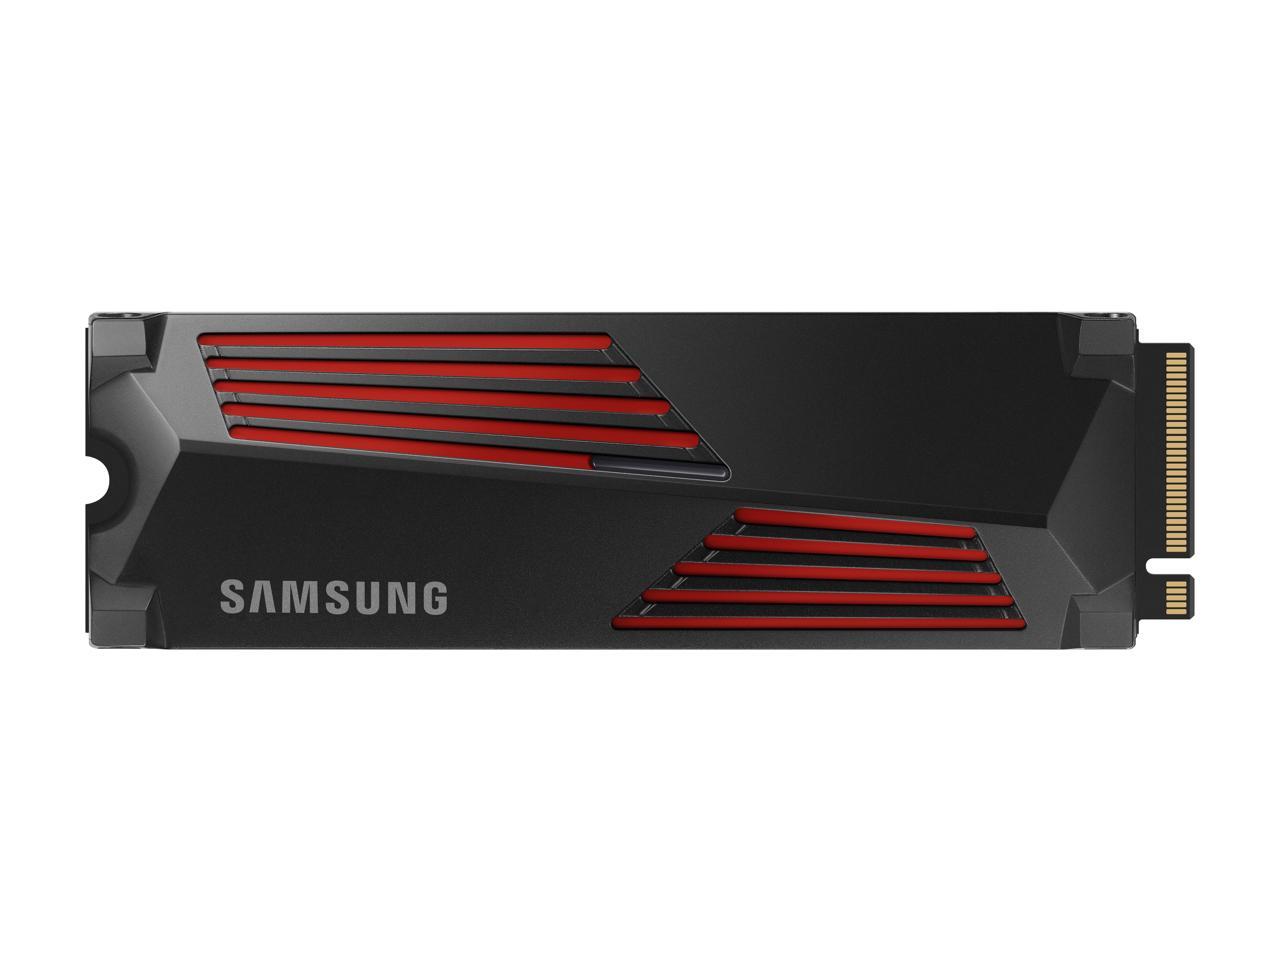 SAMSUNG SSD 1TB 990 PRO W/HEATSINK  M.2 PCIe  GEN 4X 4 (15 DAYS EPROM DOA/ BALANCE SAMSUNG WTY)